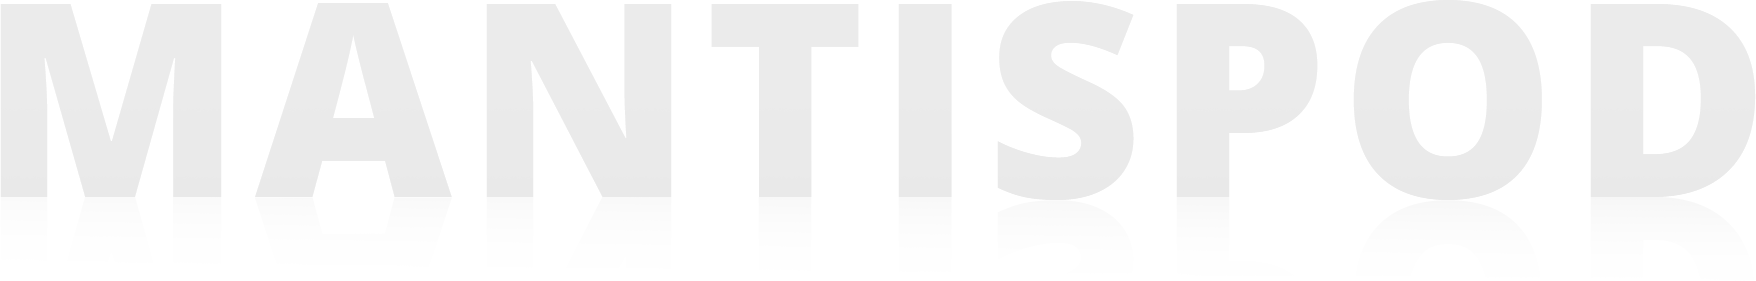 Logo de la repisa de la chimenea